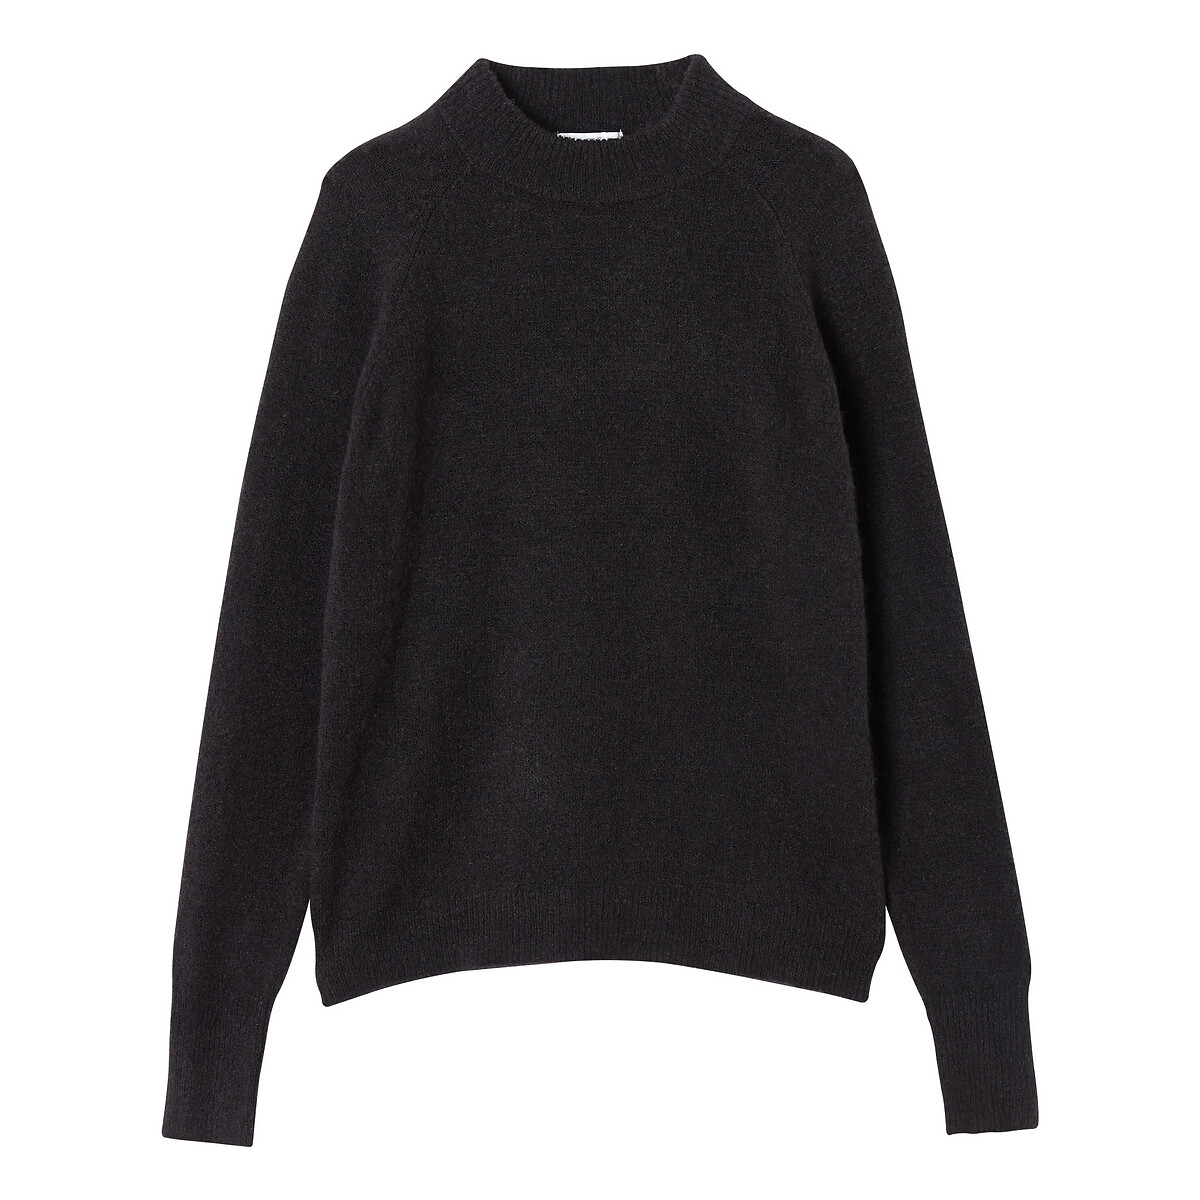 Пуловер La Redoute С круглым вырезом из плотного трикотажа S черный, размер S - фото 5